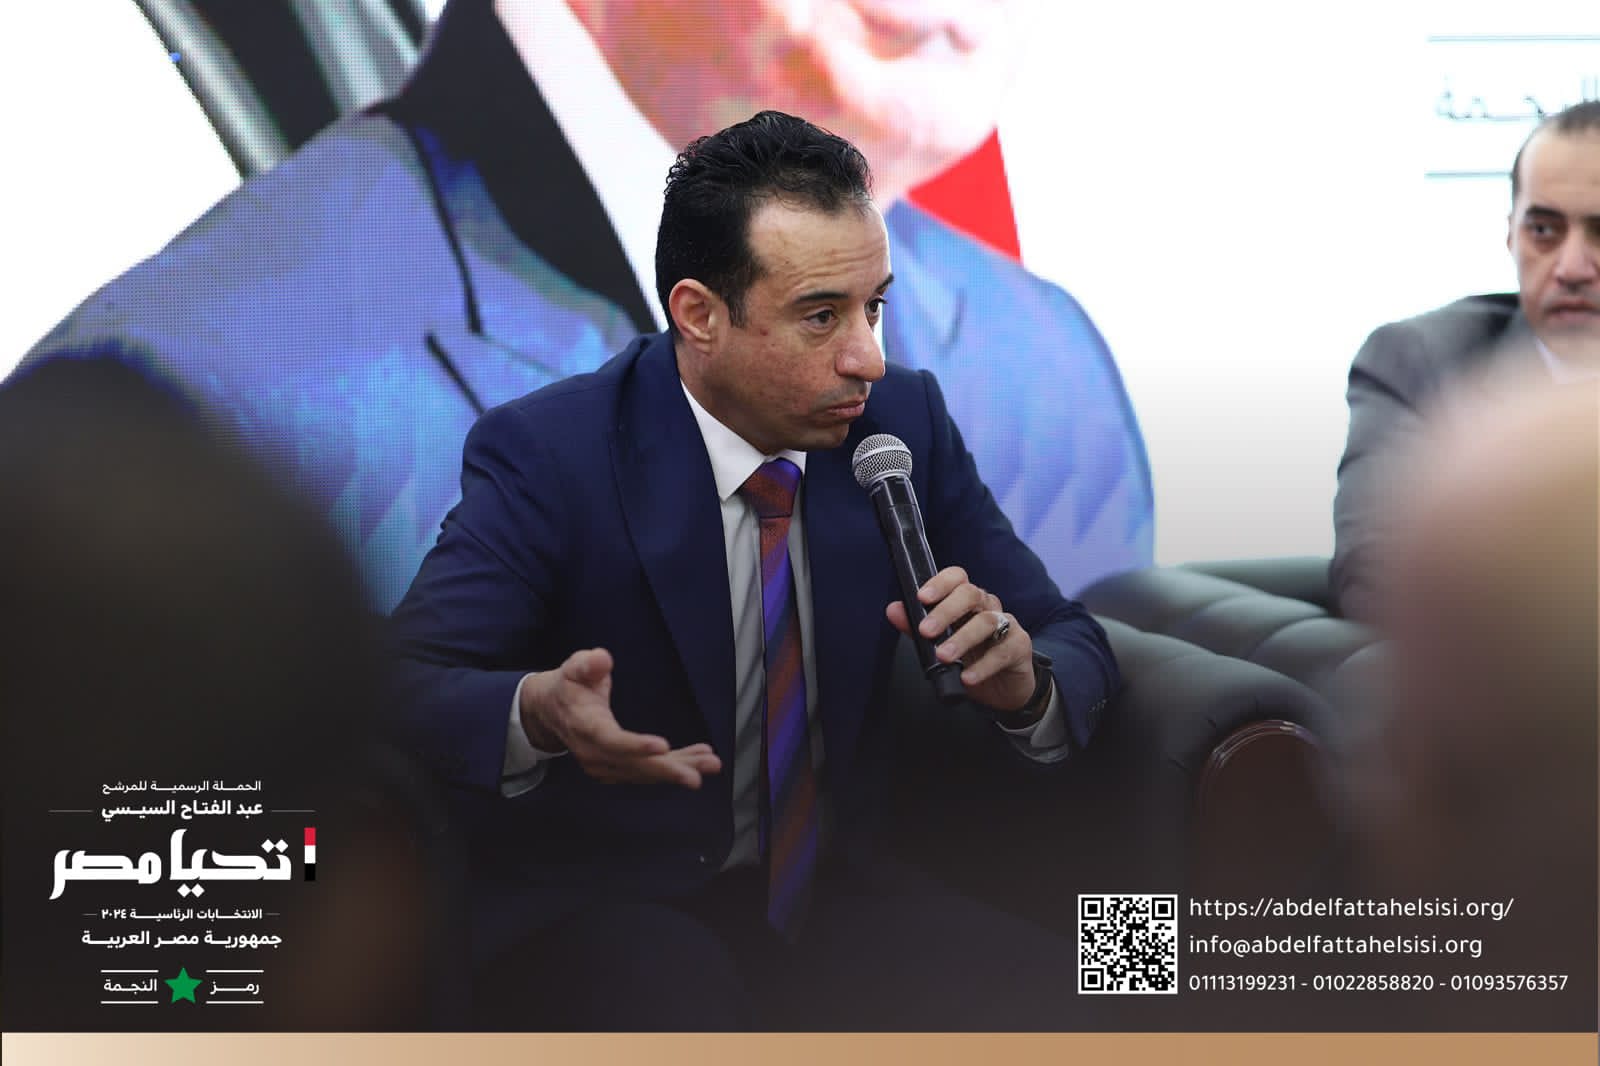 الحملة الرسمية للمرشح الرئاسى عبد الفتاح السيسي تستقبل وفداً من النقابة العامة لأعمال النقل الجوي   (20)